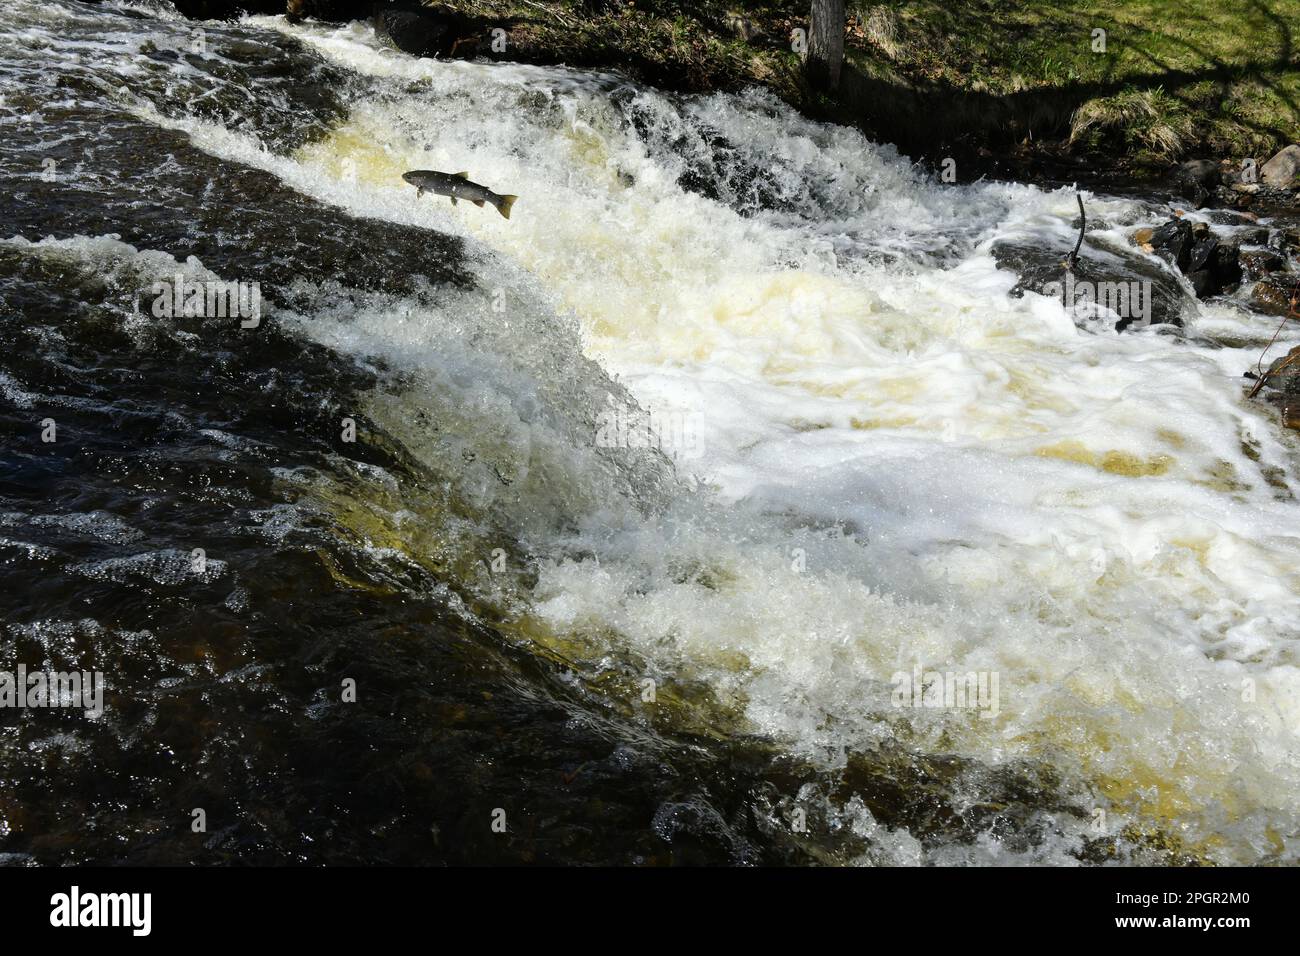 Les poissons qui sautent vers le haut dans les basses chutes en mai dans le ruisseau McVickars, à Thunder Bay, Ontario, Canada, sur leur voyage pour frayer en amont dans des eaux peu profondes et lentes. Banque D'Images